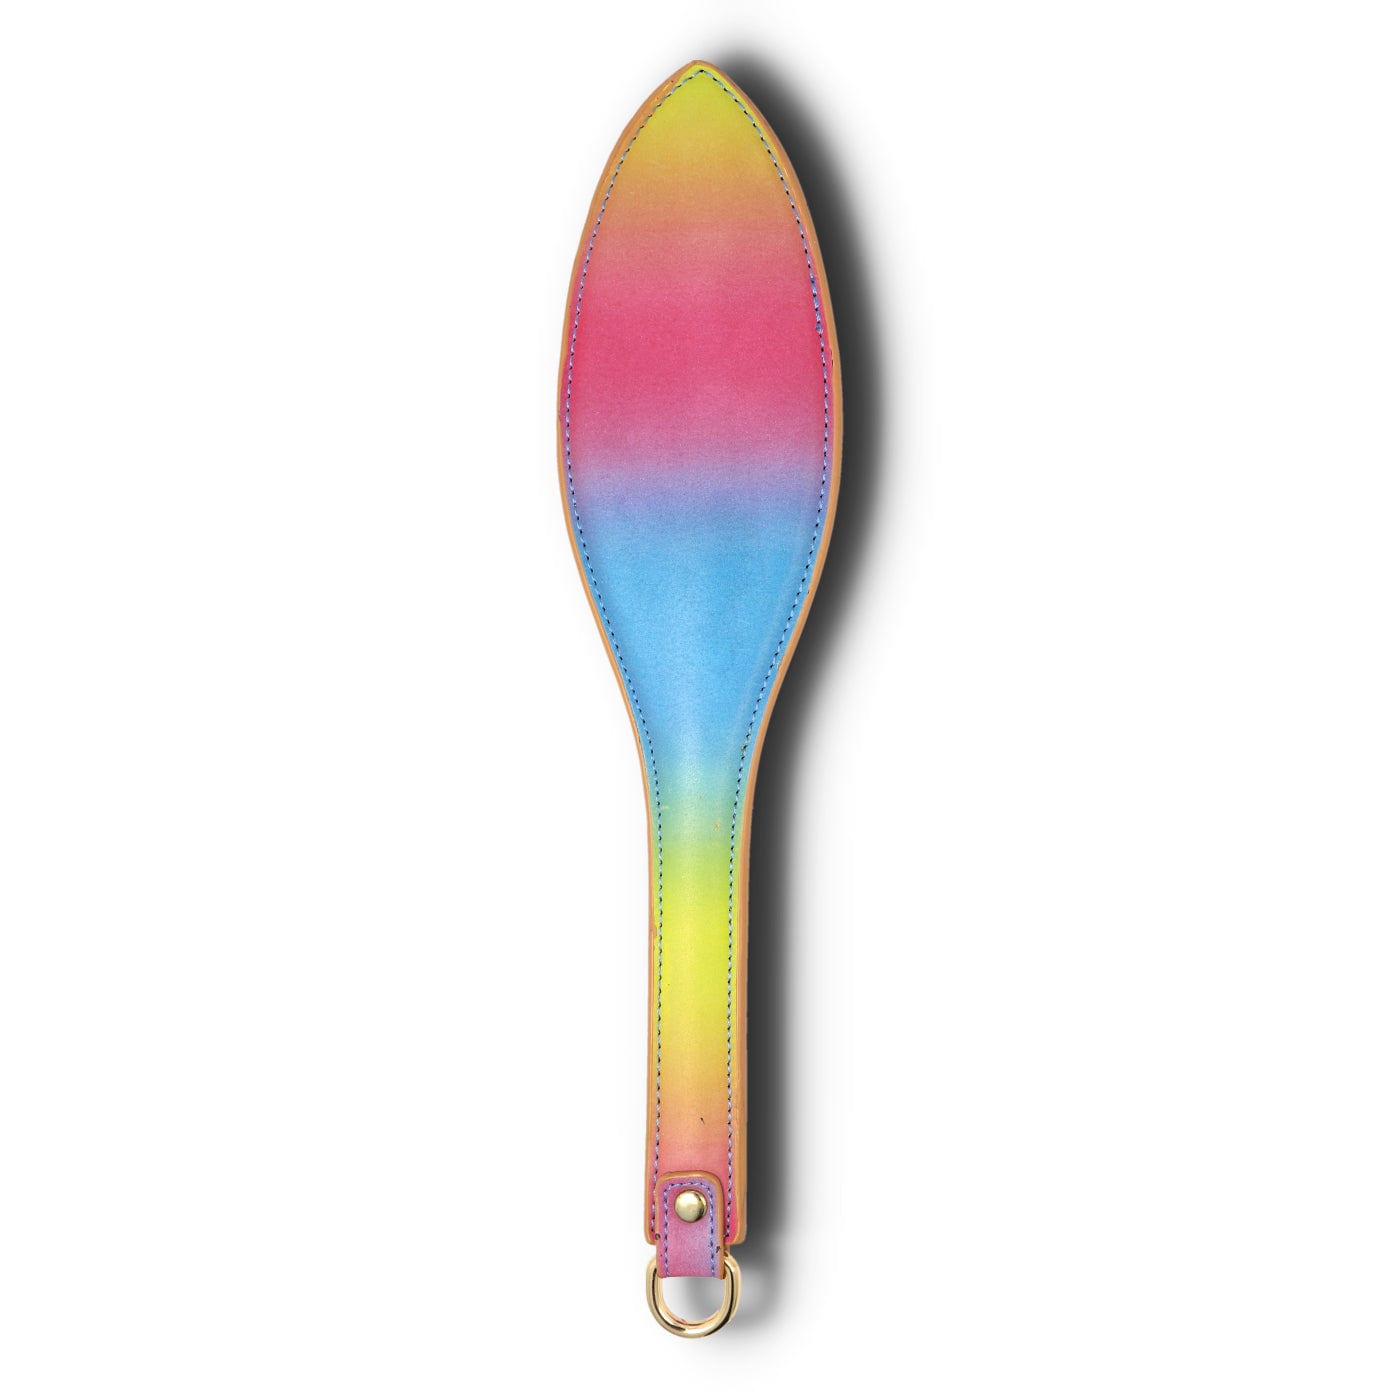 regnbuefarvet paddle i ægte læder til spanking og bdsm